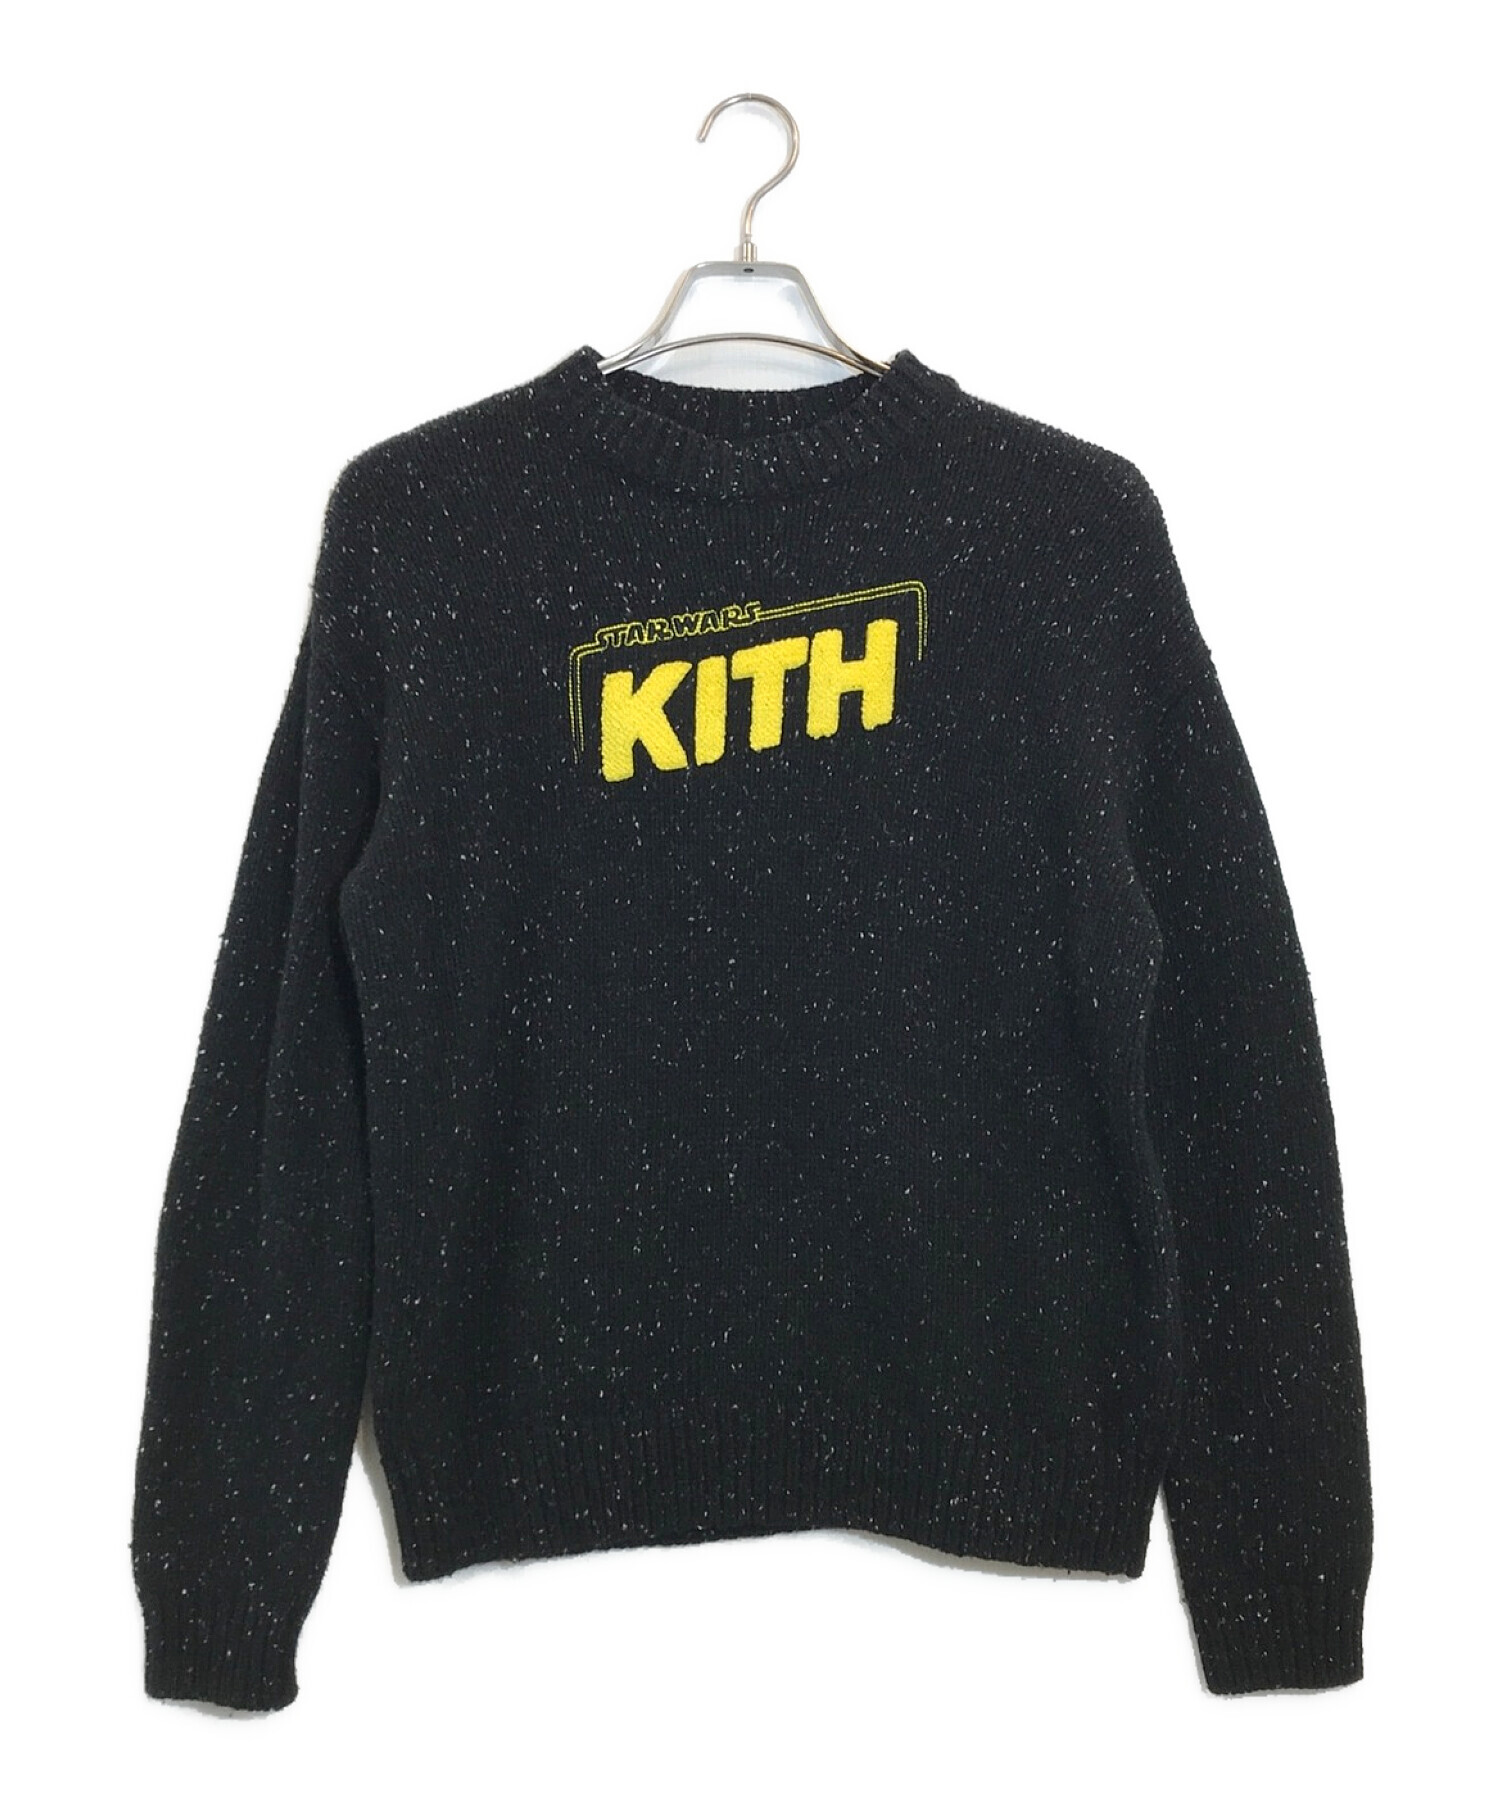 KITH (キス) STAR WARS (スターウォーズ) ギャラクシークルーネックセーター ブラック サイズ:SIZE XS